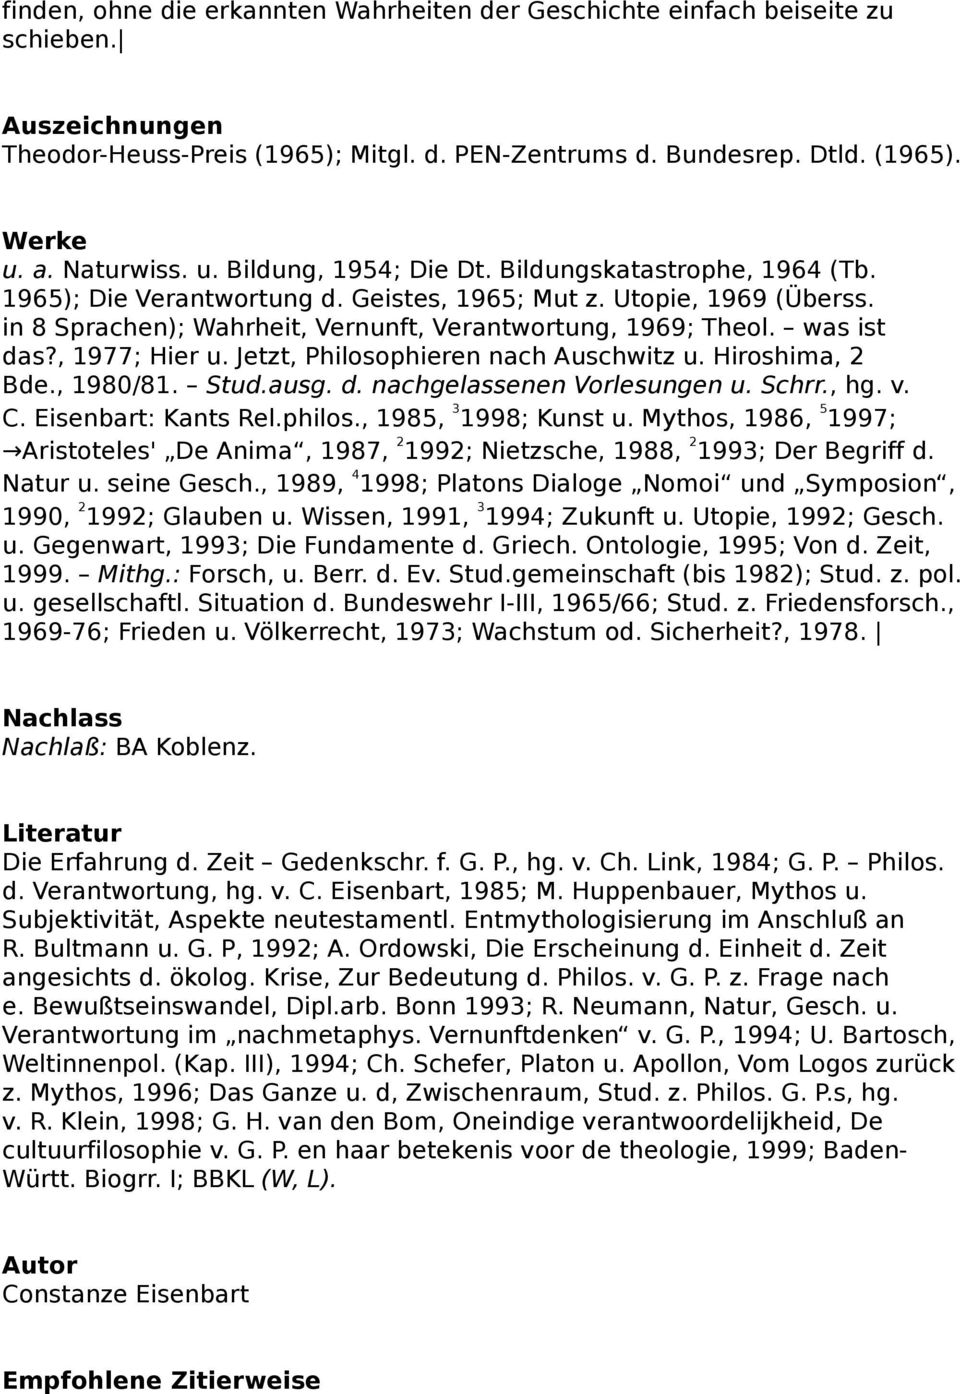 was ist das?, 1977; Hier u. Jetzt, Philosophieren nach Auschwitz u. Hiroshima, 2 Bde., 1980/81. Stud.ausg. d. nachgelassenen Vorlesungen u. Schrr., hg. v. C. Eisenbart: Kants Rel.philos.